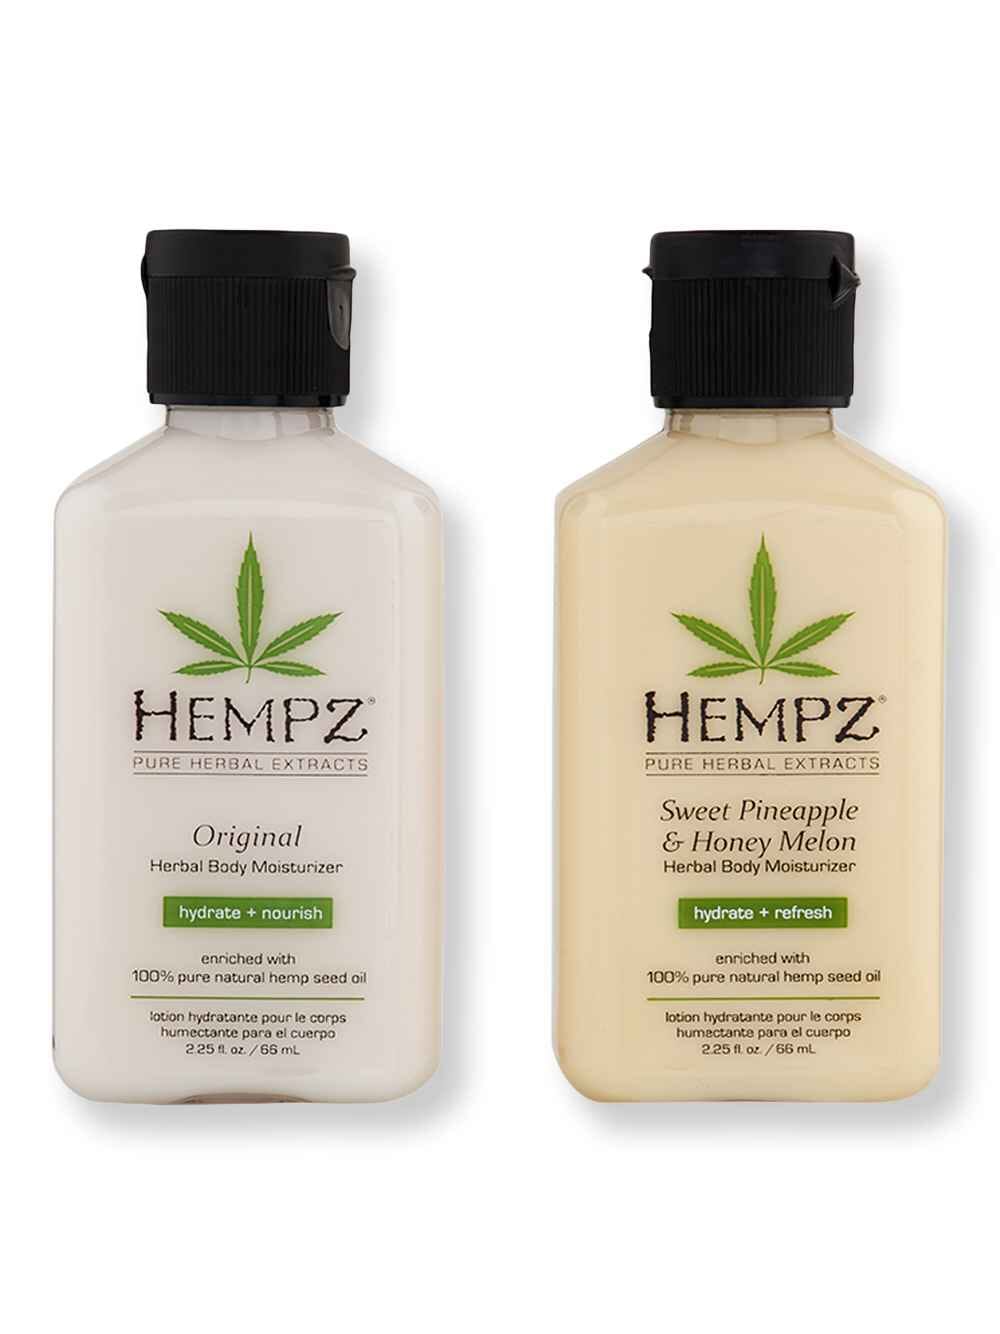 Hempz Hempz Original Herbal Body Moisturizer 2.25 oz + Sweet Pineapple & Honey Melon Herbal Body Moisturizer 2.25 oz Body Lotions & Oils 